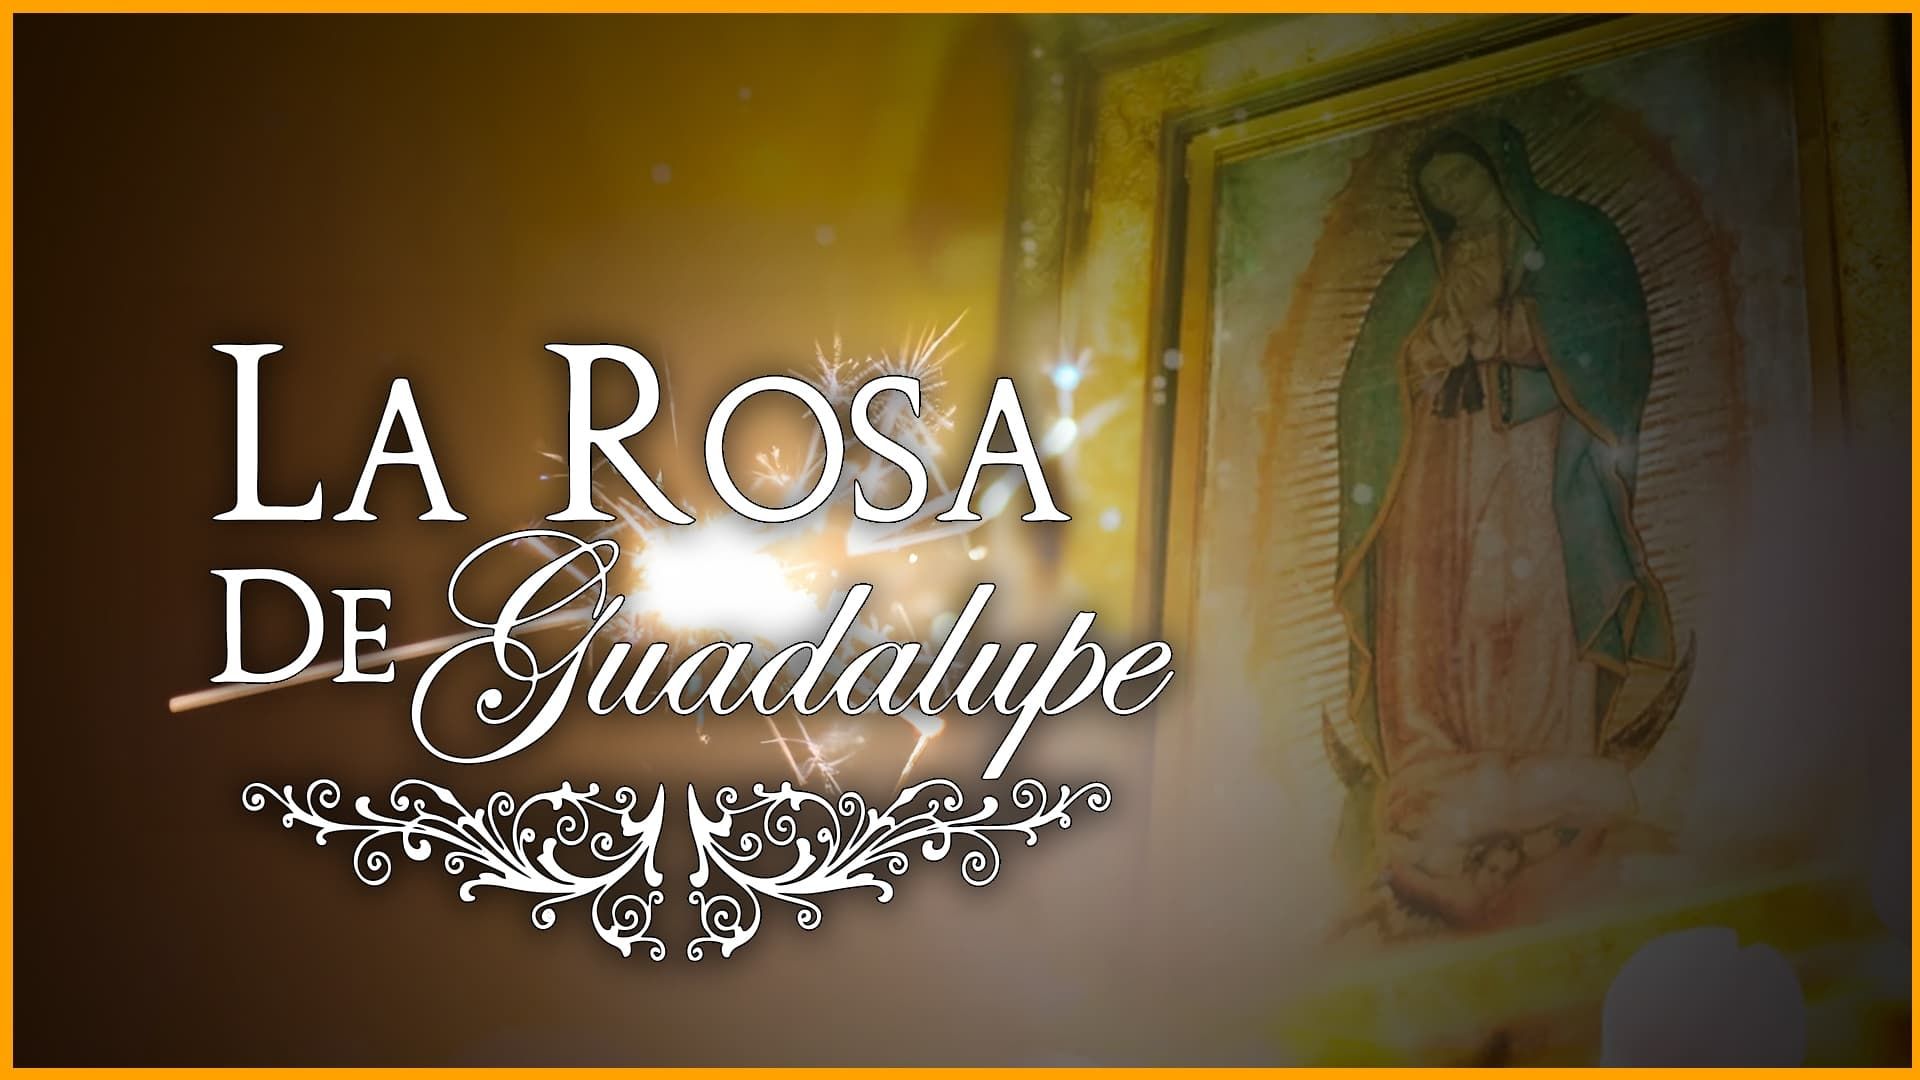 La rosa de Guadalupe background